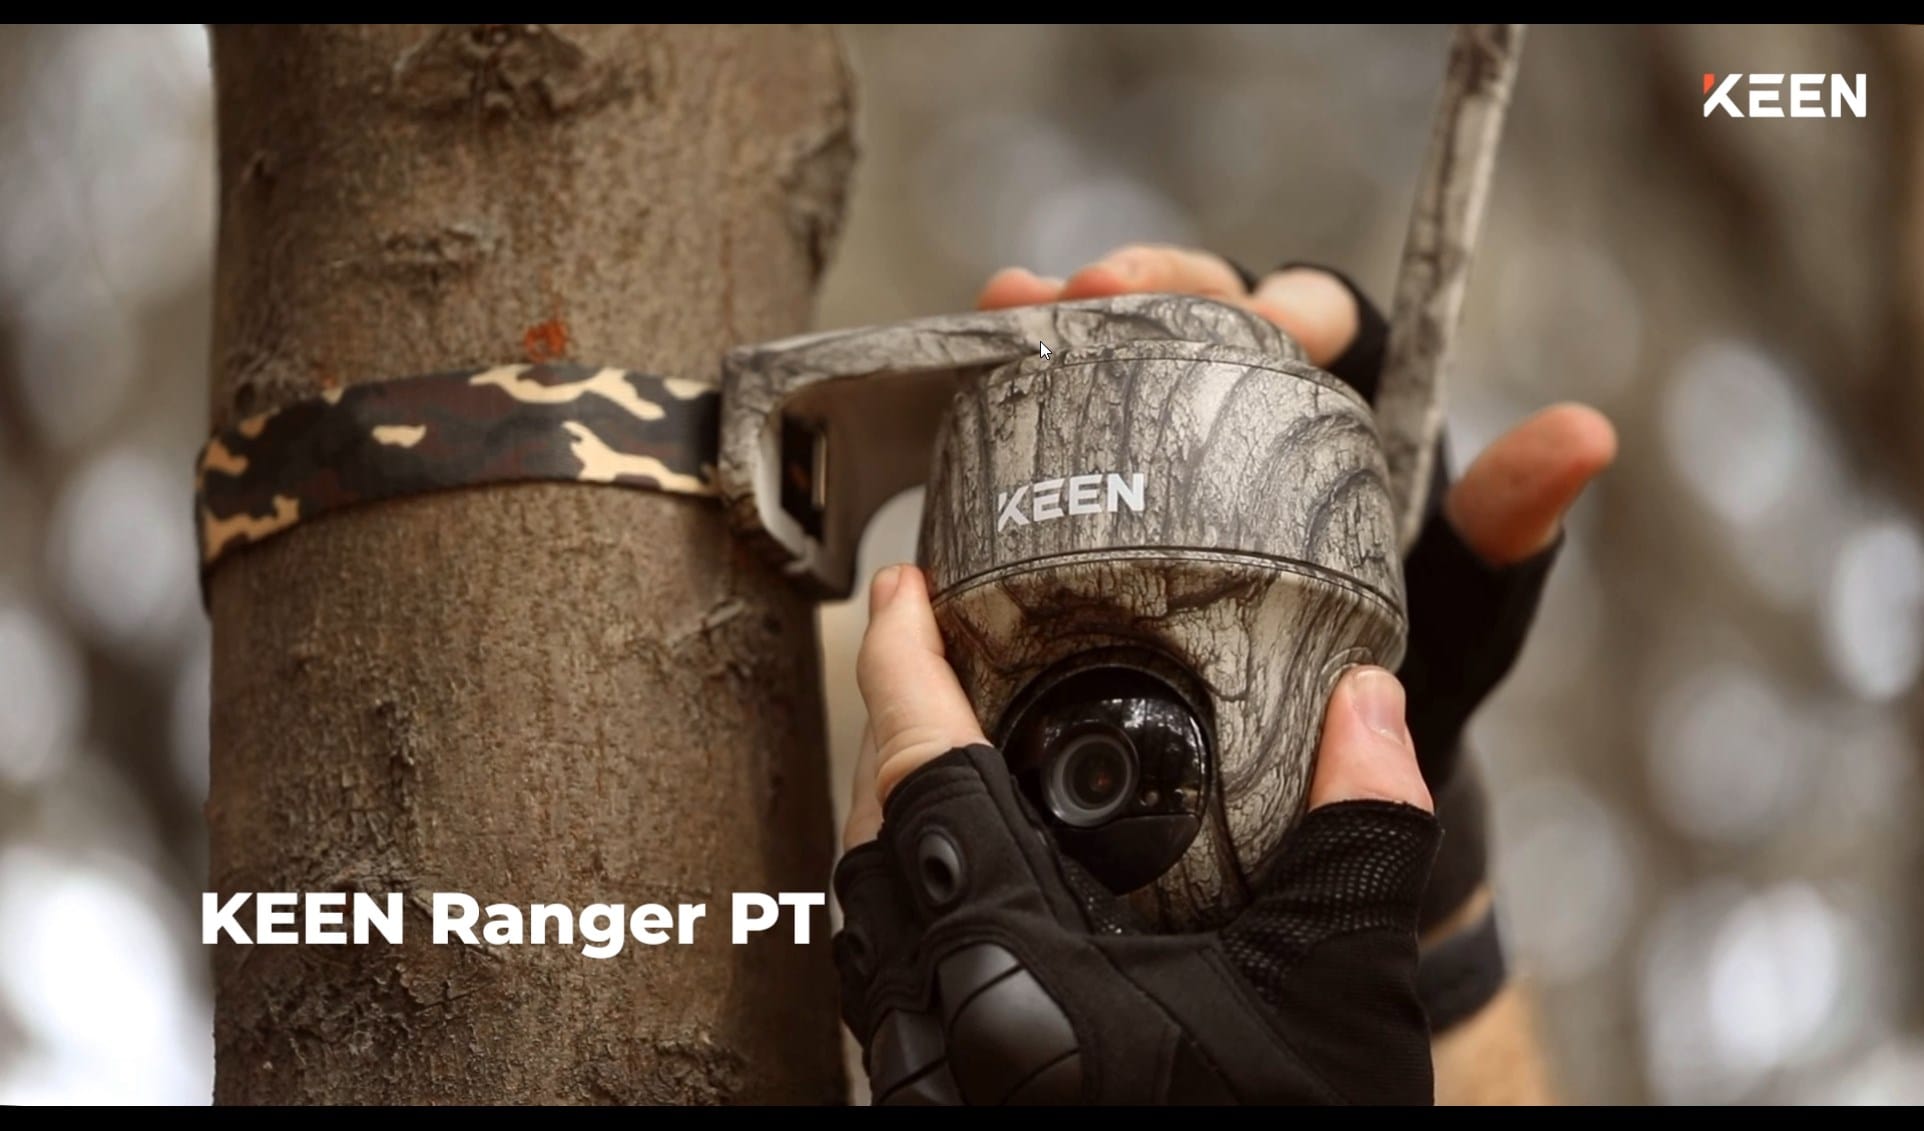 Ranger PT